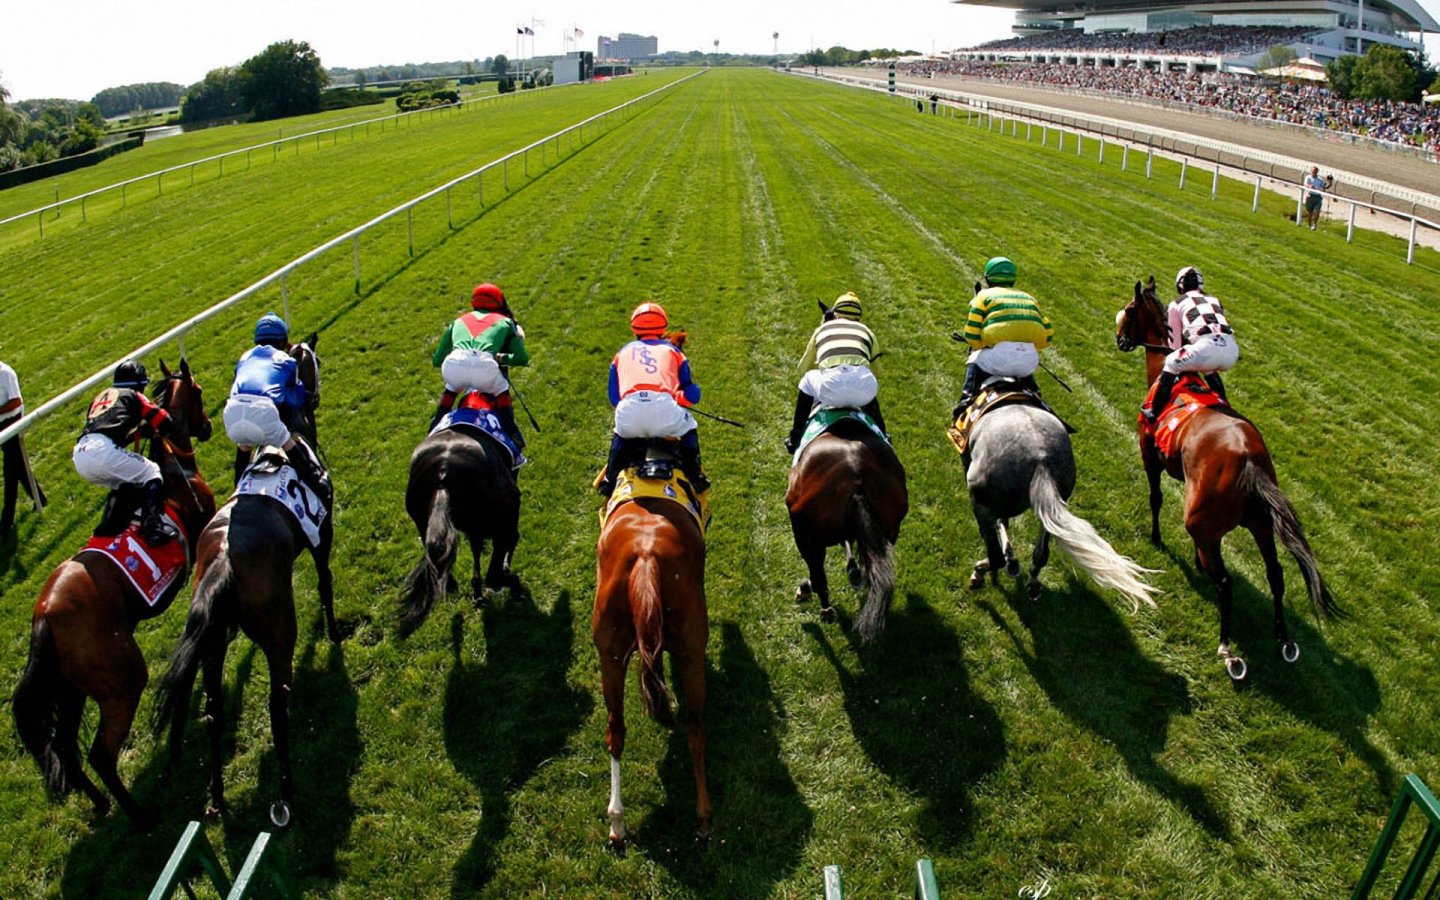 Guía de apuestas deportivas: cómo apostar en carreras de caballos